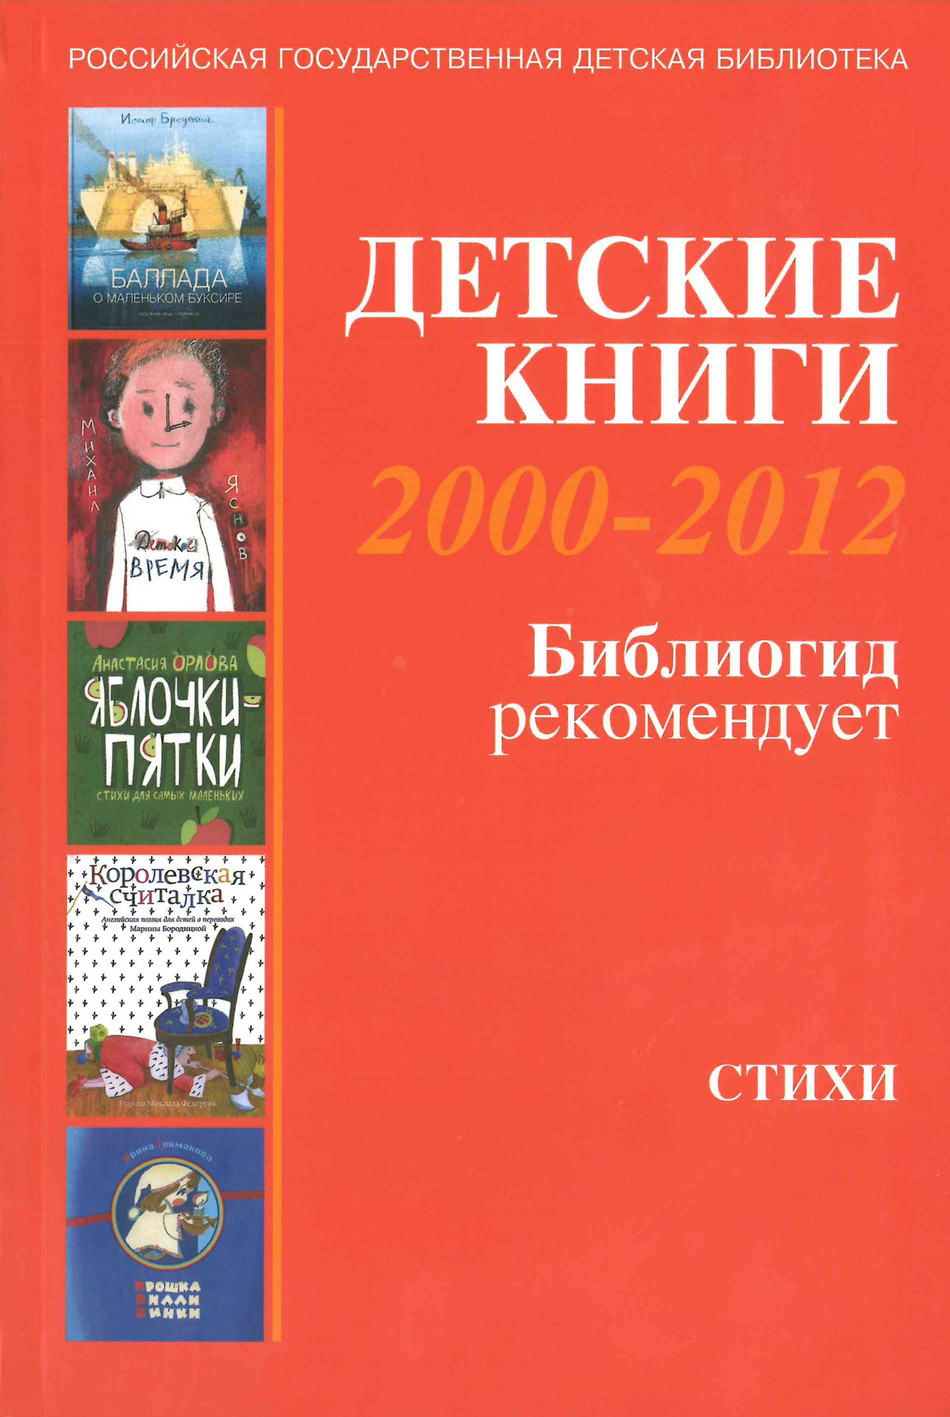  Детские книги 2000-2012: Библиогид рекомендует: [1] Стихи